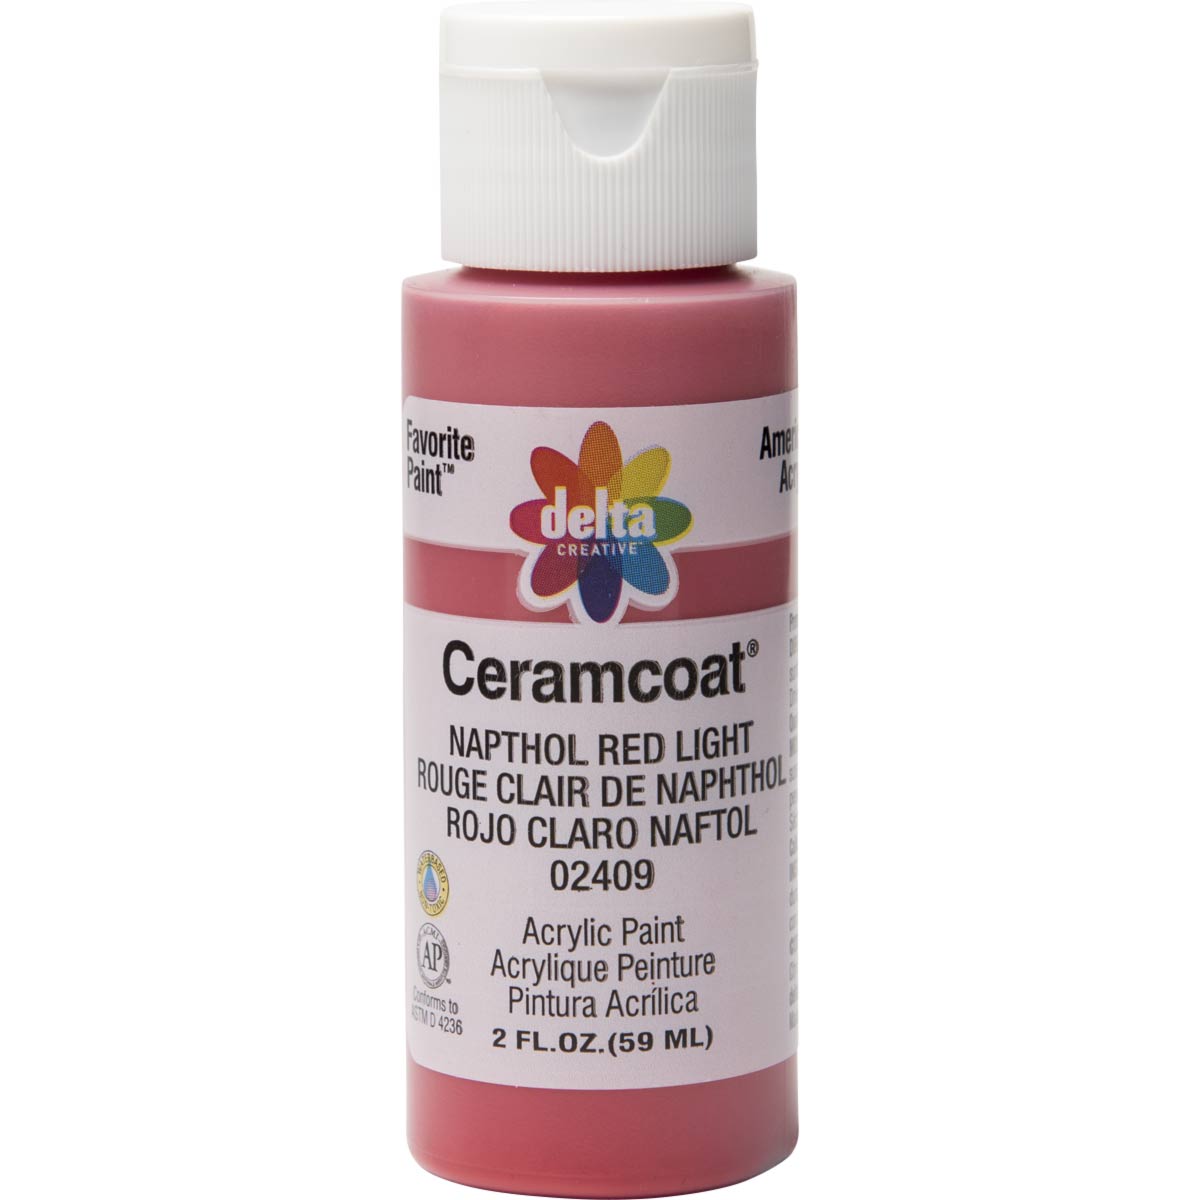 Delta Ceramcoat Acrylic Paint - Napthol Red Light, 2 oz. - 024090202W